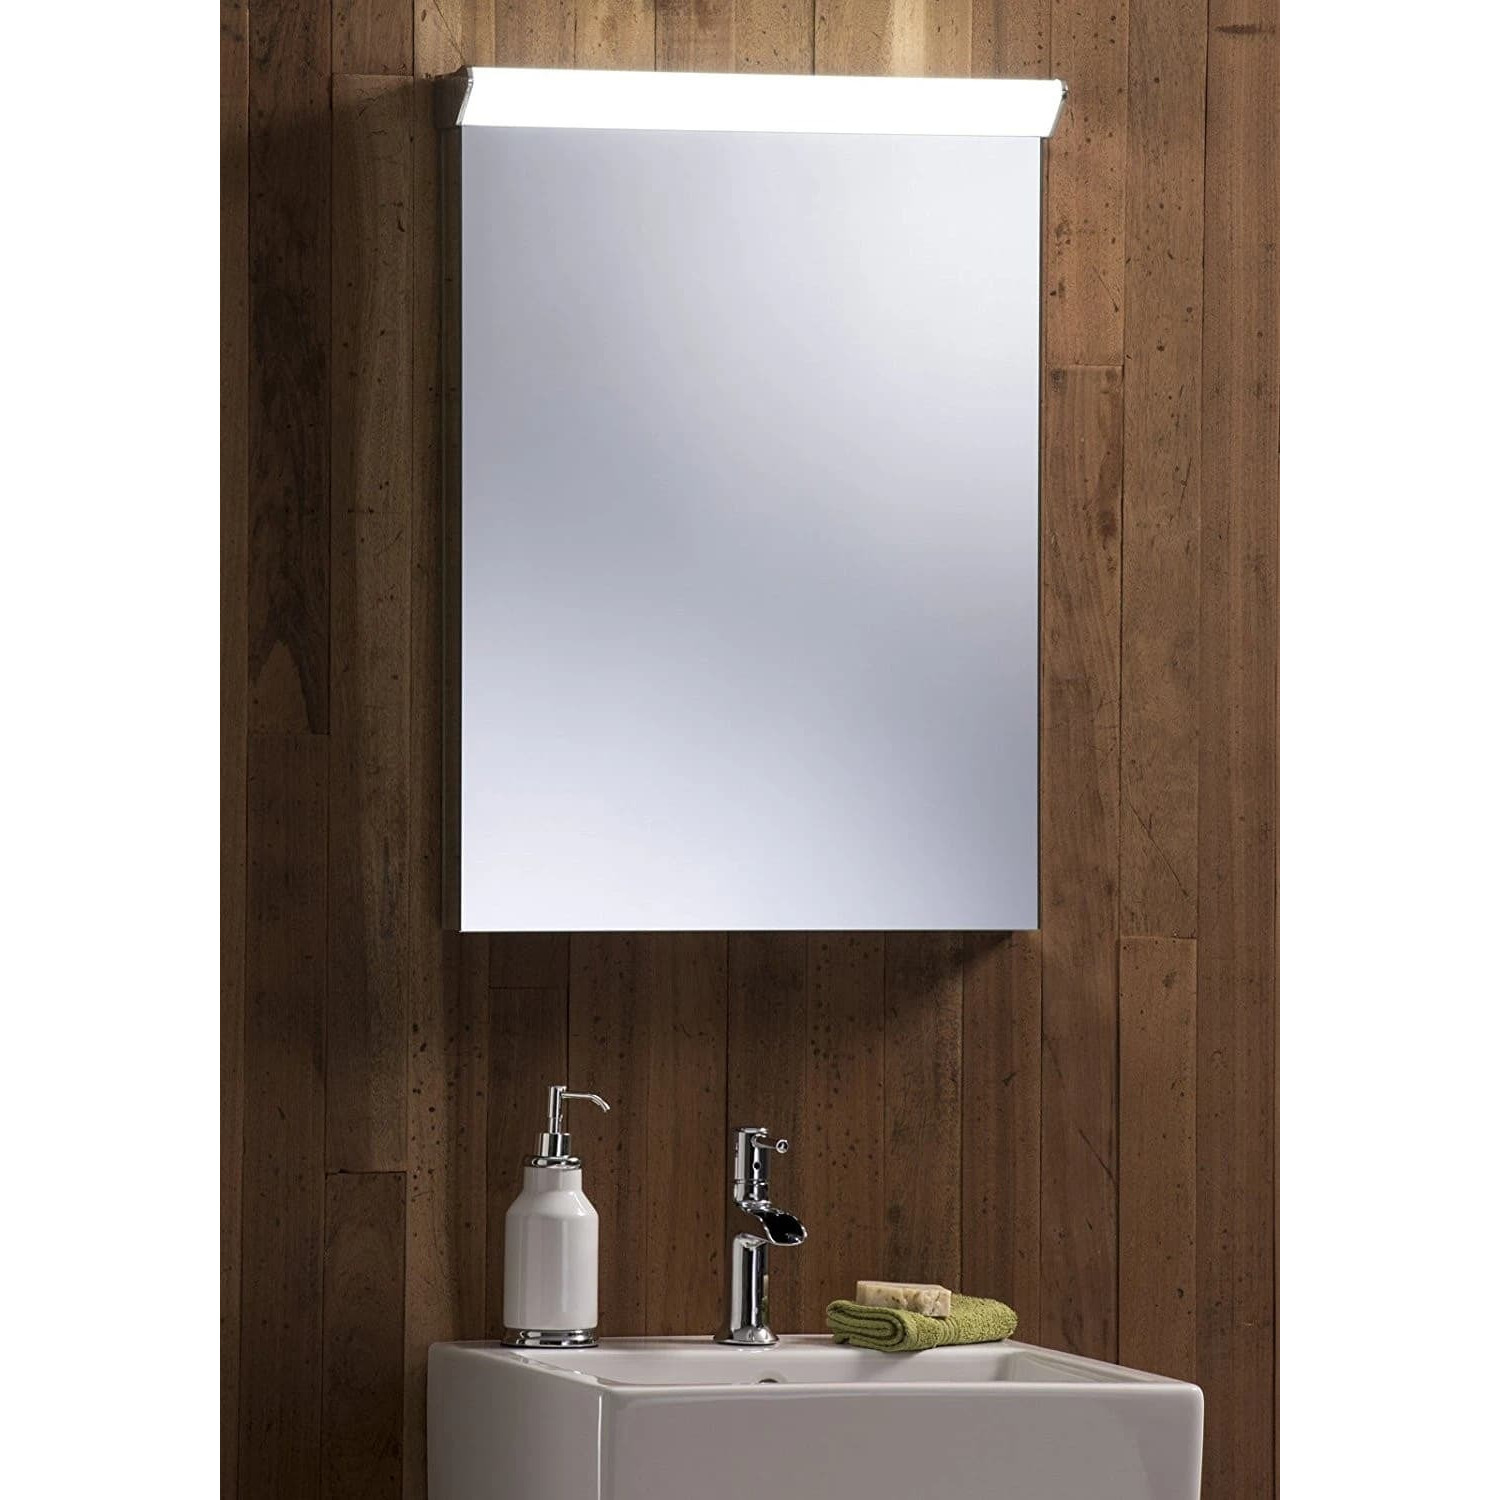 LED Illuminated Bathroom Wall Mirror LED33 Size-70HX50Wcm